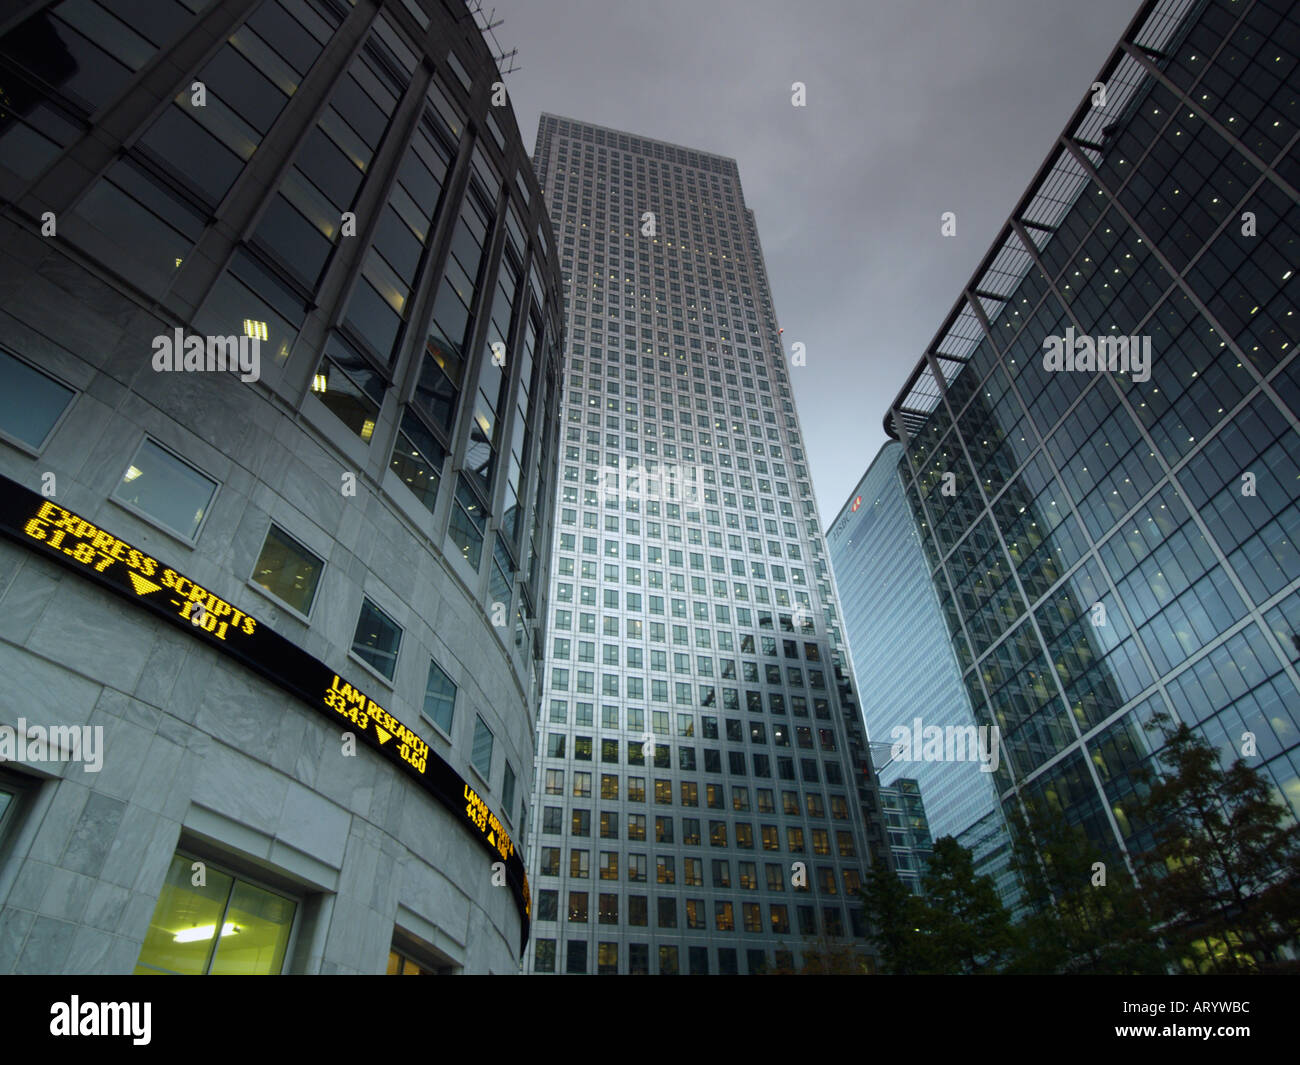 Les immeubles de bureaux avec stock market ticker Docklands Canary Wharf Londres One Canada Square UK Banque D'Images